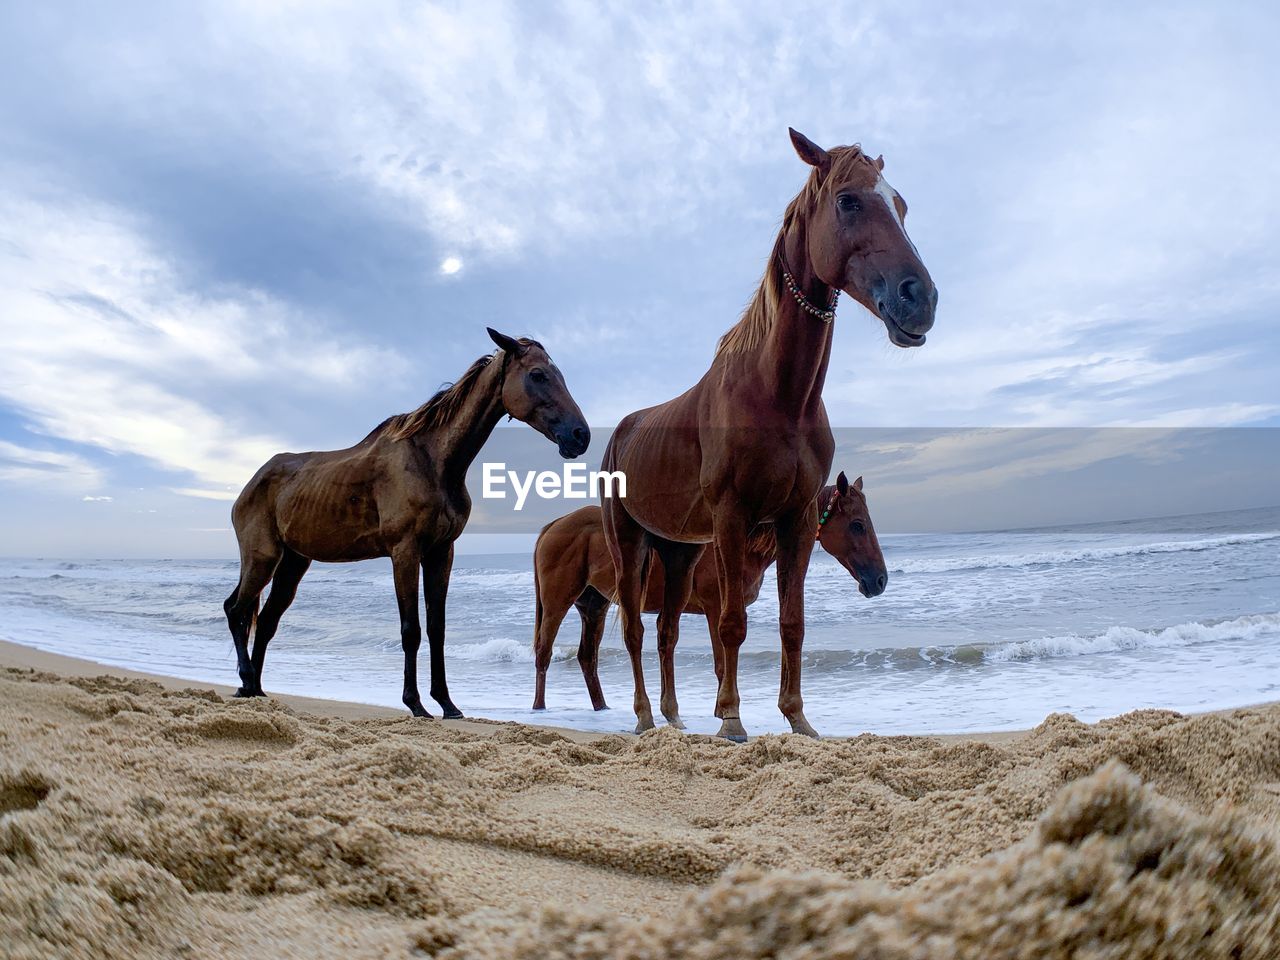 HORSE ON BEACH